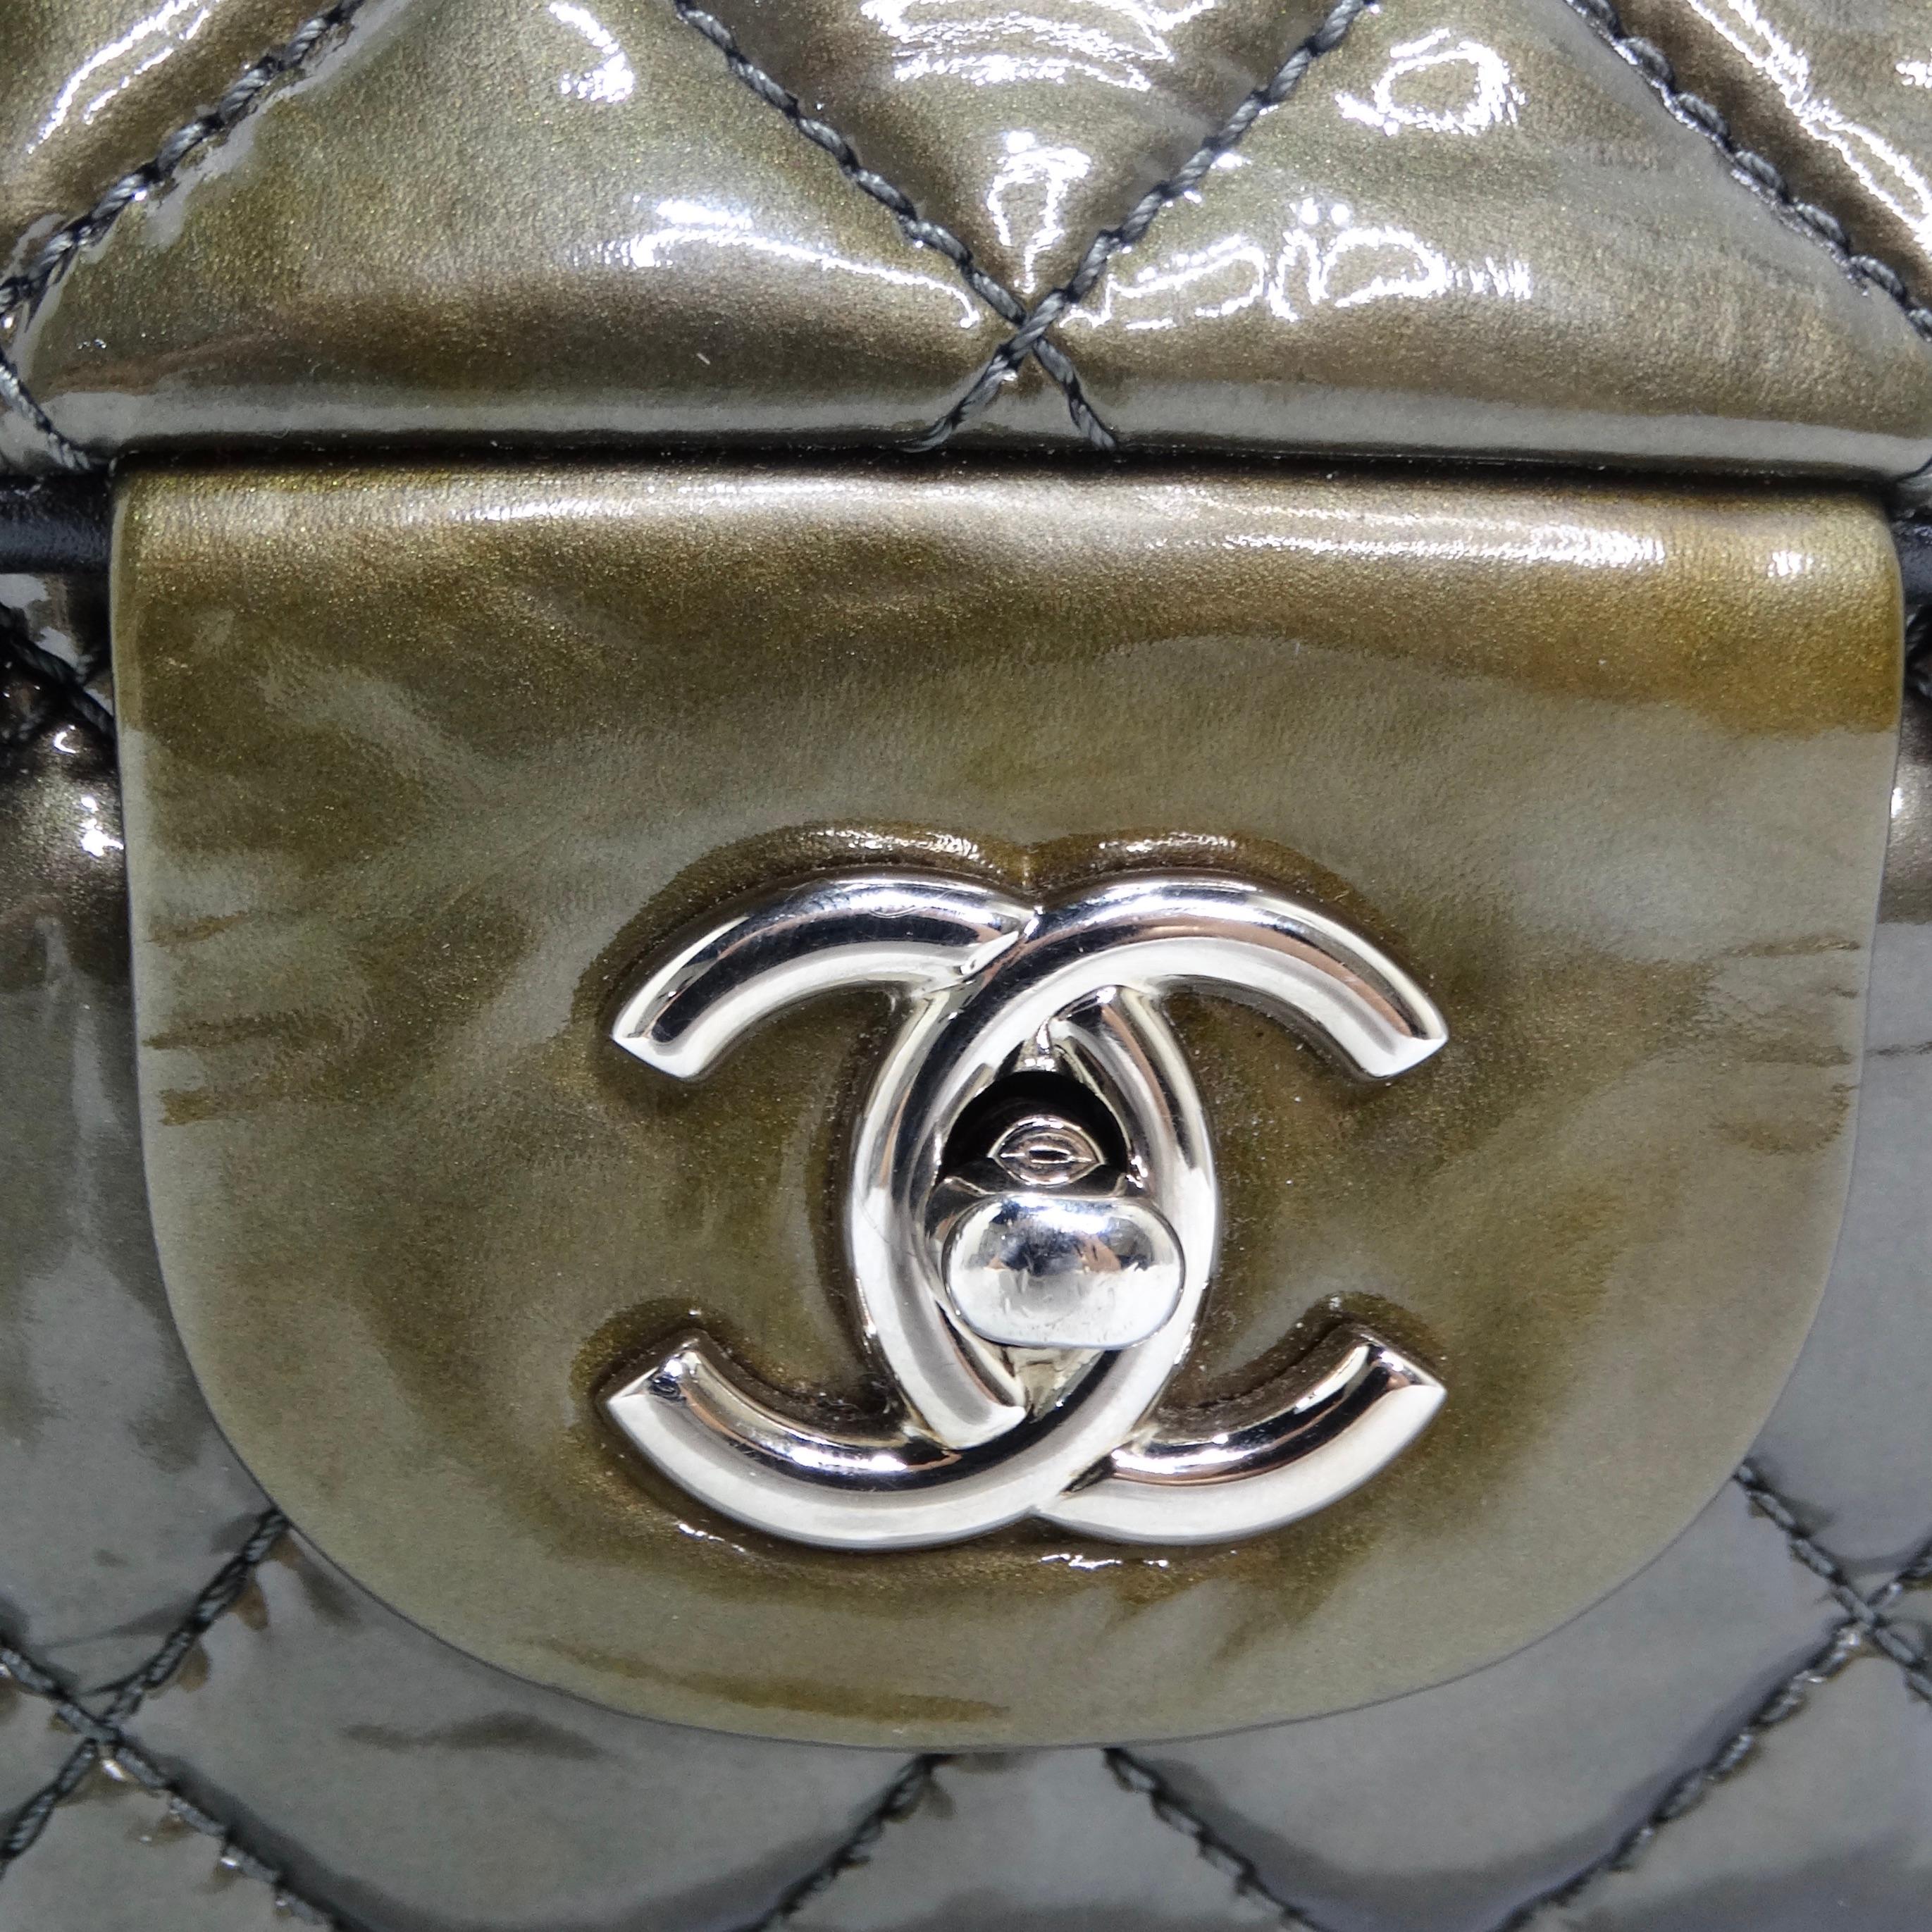 Voici un sac à main qui n'est pas seulement un accessoire de mode mais aussi une pièce de collection - le Chanel 2008-2009 Metallic Patent Quilted Jumbo Single Flap en Olive Green. Ce superbe sac à bandoulière est confectionné en cuir verni brillant